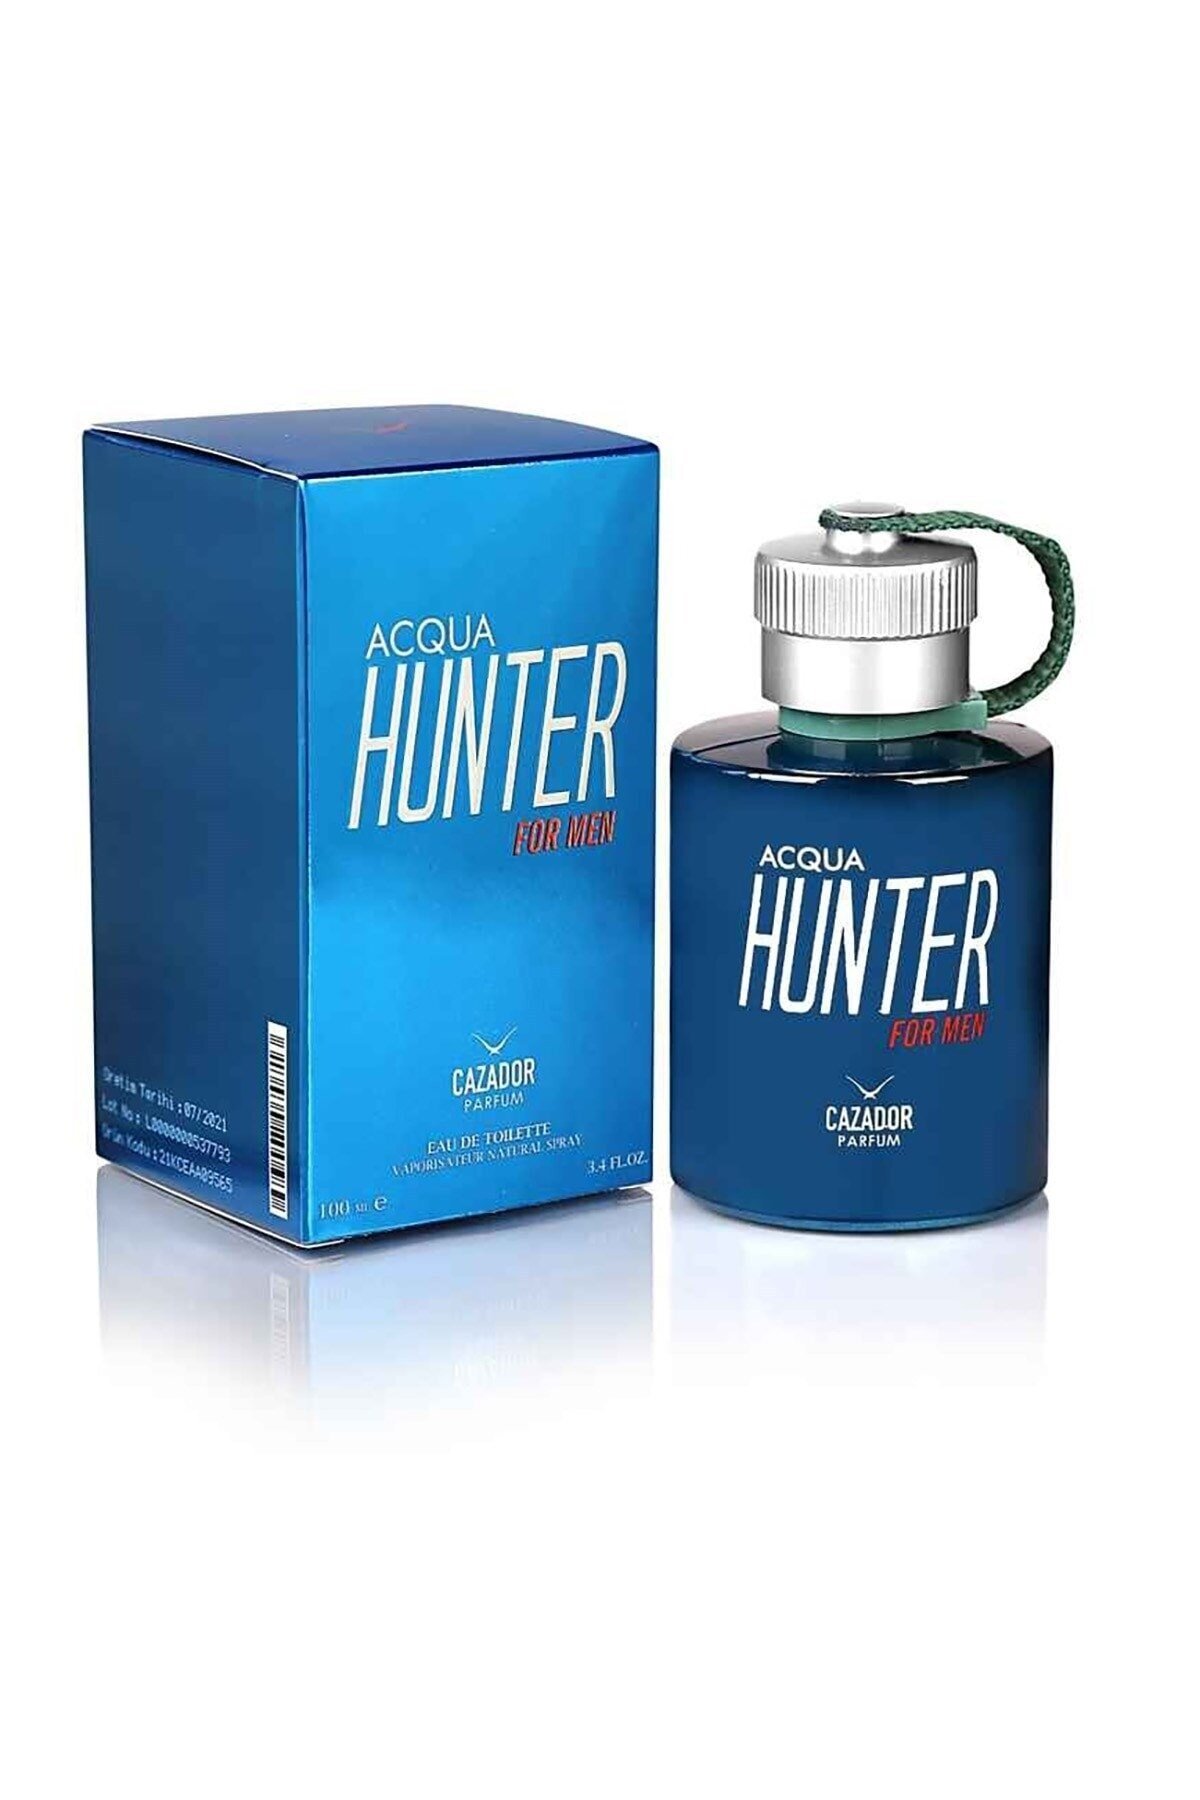 cazador erkek hunter 100cl parfüm 9575